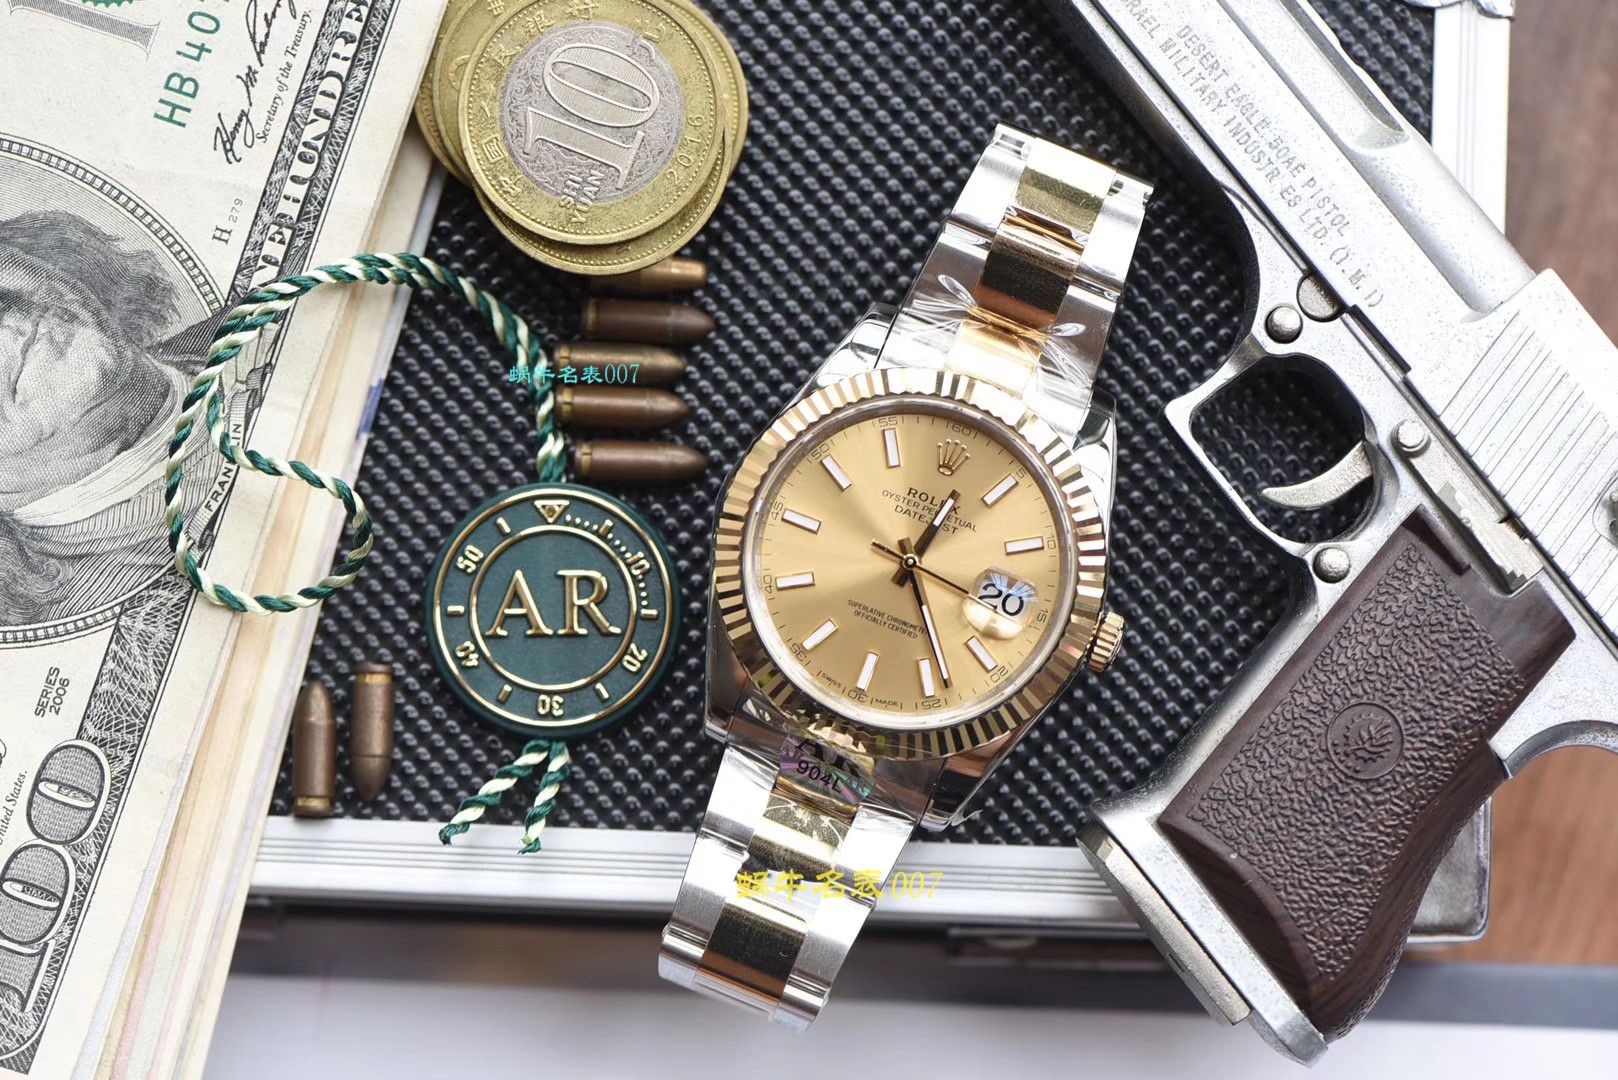 【视频评测AR厂一比一复刻劳力士日志手表】复刻的手表劳力士日志型系列116333-72213香槟盘腕表 